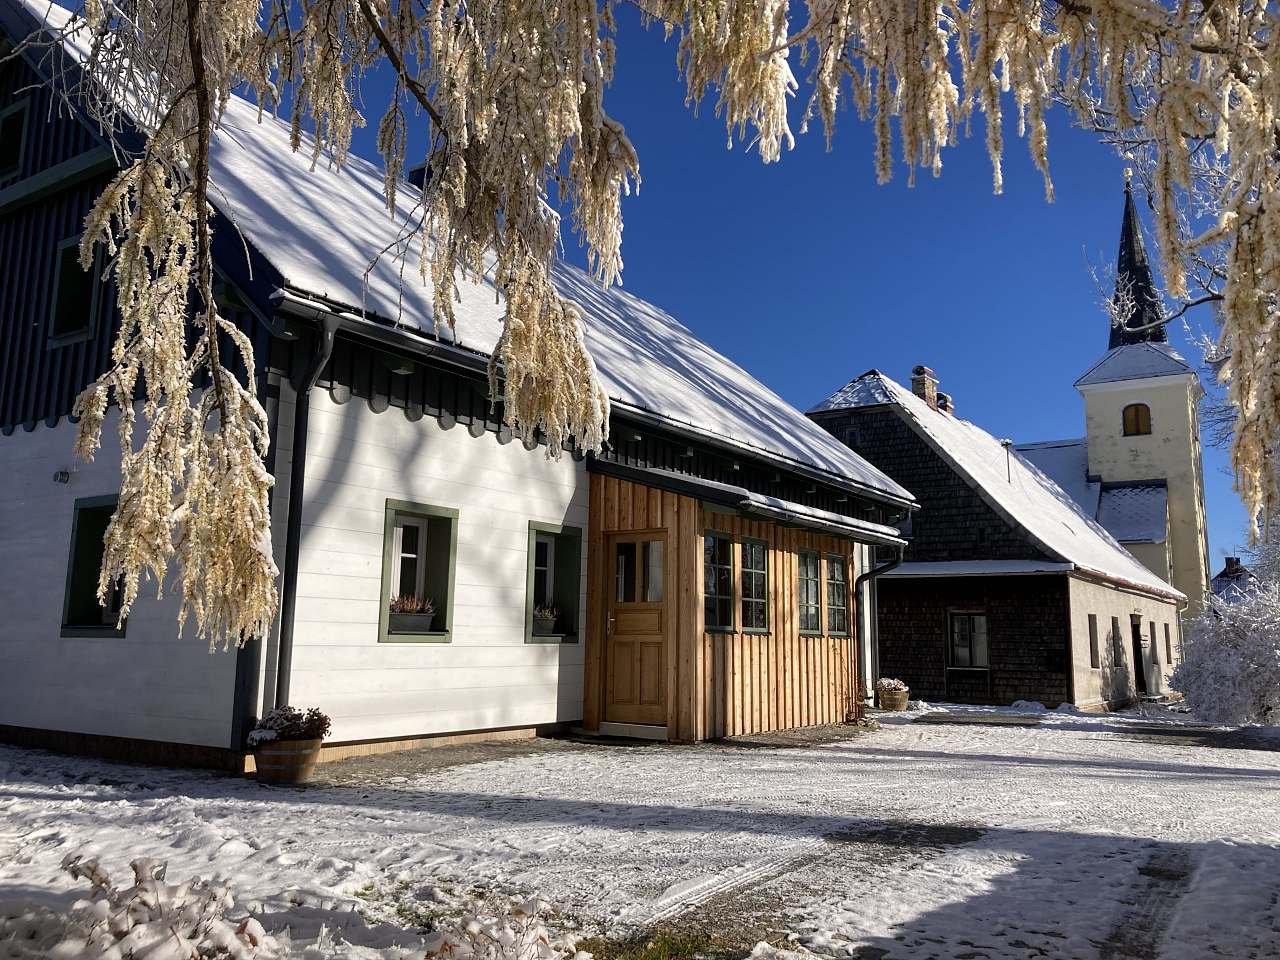 Apartamentos de montaña Borůvka y Brusinka, comienzo del invierno